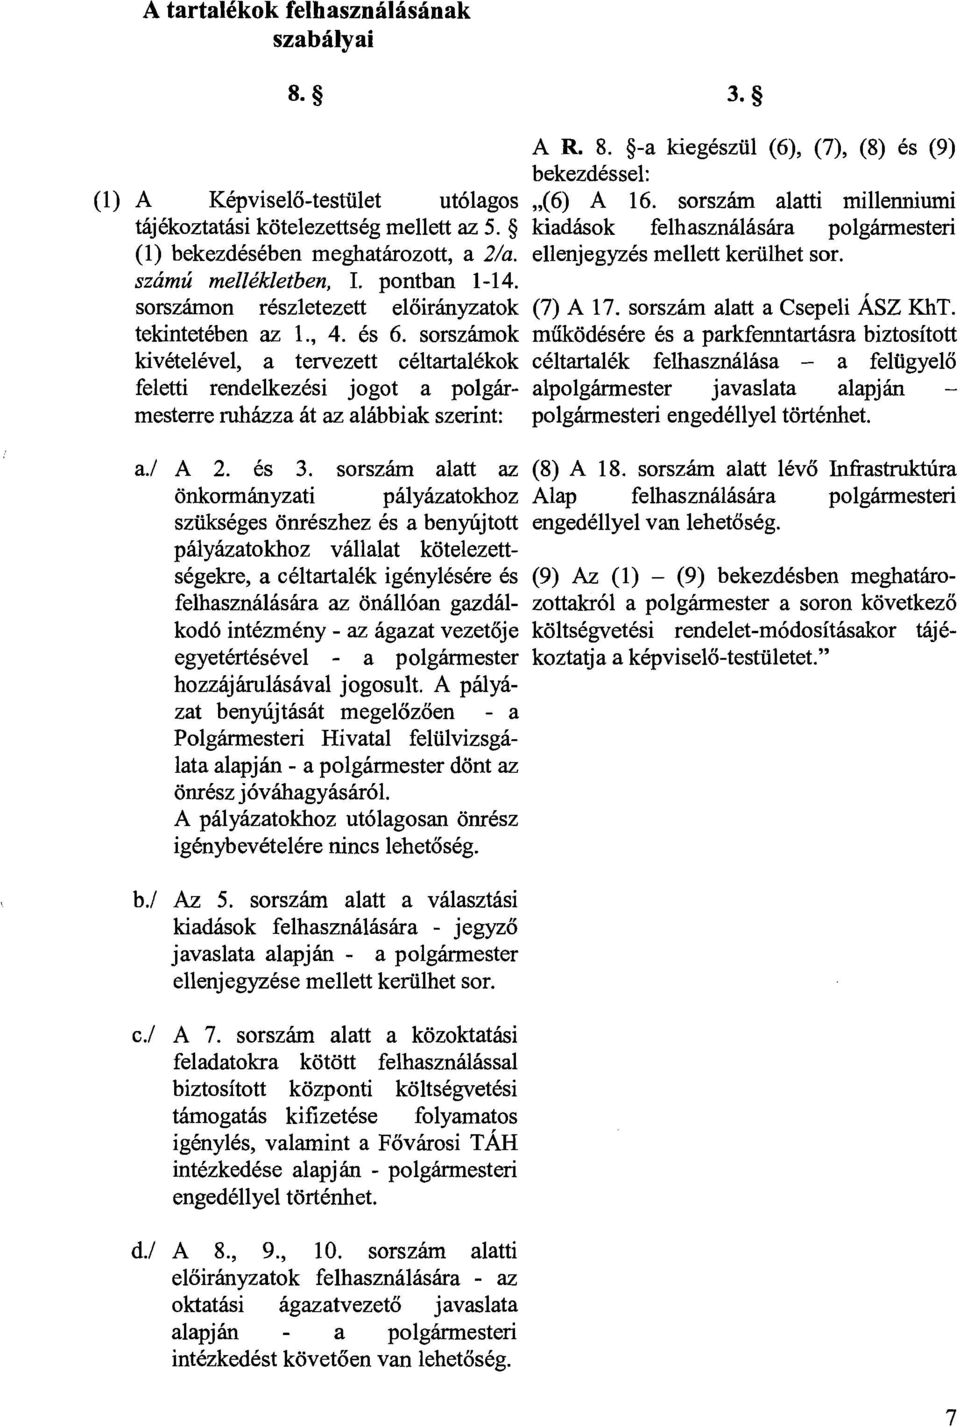 szhmzi mell&kletben, I. pontban 1-14. sorszhmon rkszletezett eloirhyzatok (7) A 17. sorszhm alatt a Csepeli ASZ KhT. tekintetkben az I., 4. 6s 6.